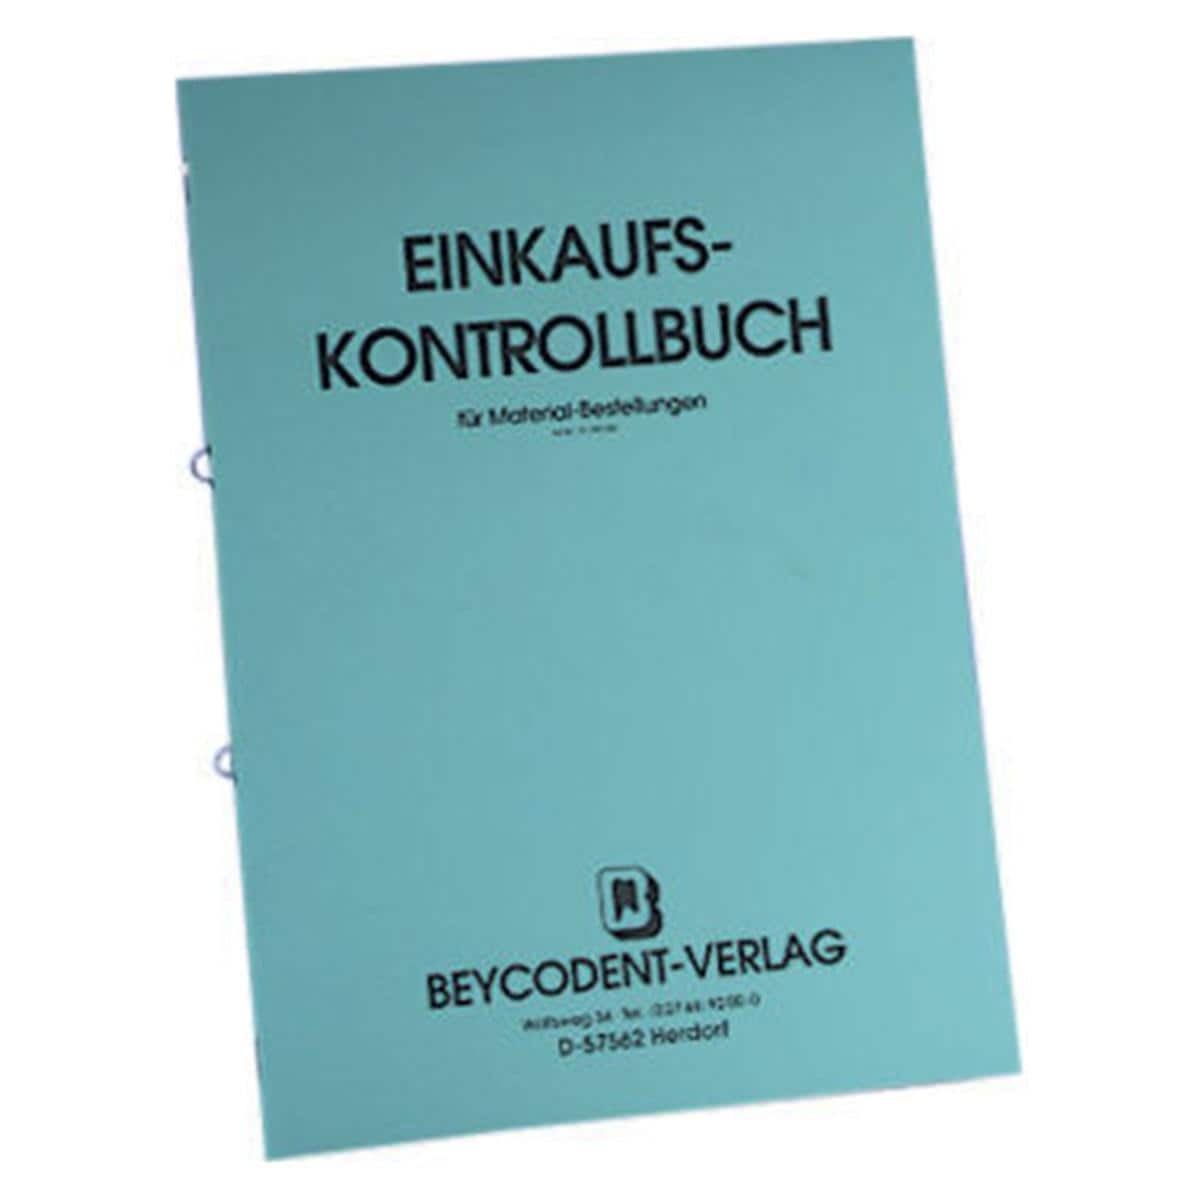 Einkaufs- / Materialkontrollbuch - Nr. 81.202.000